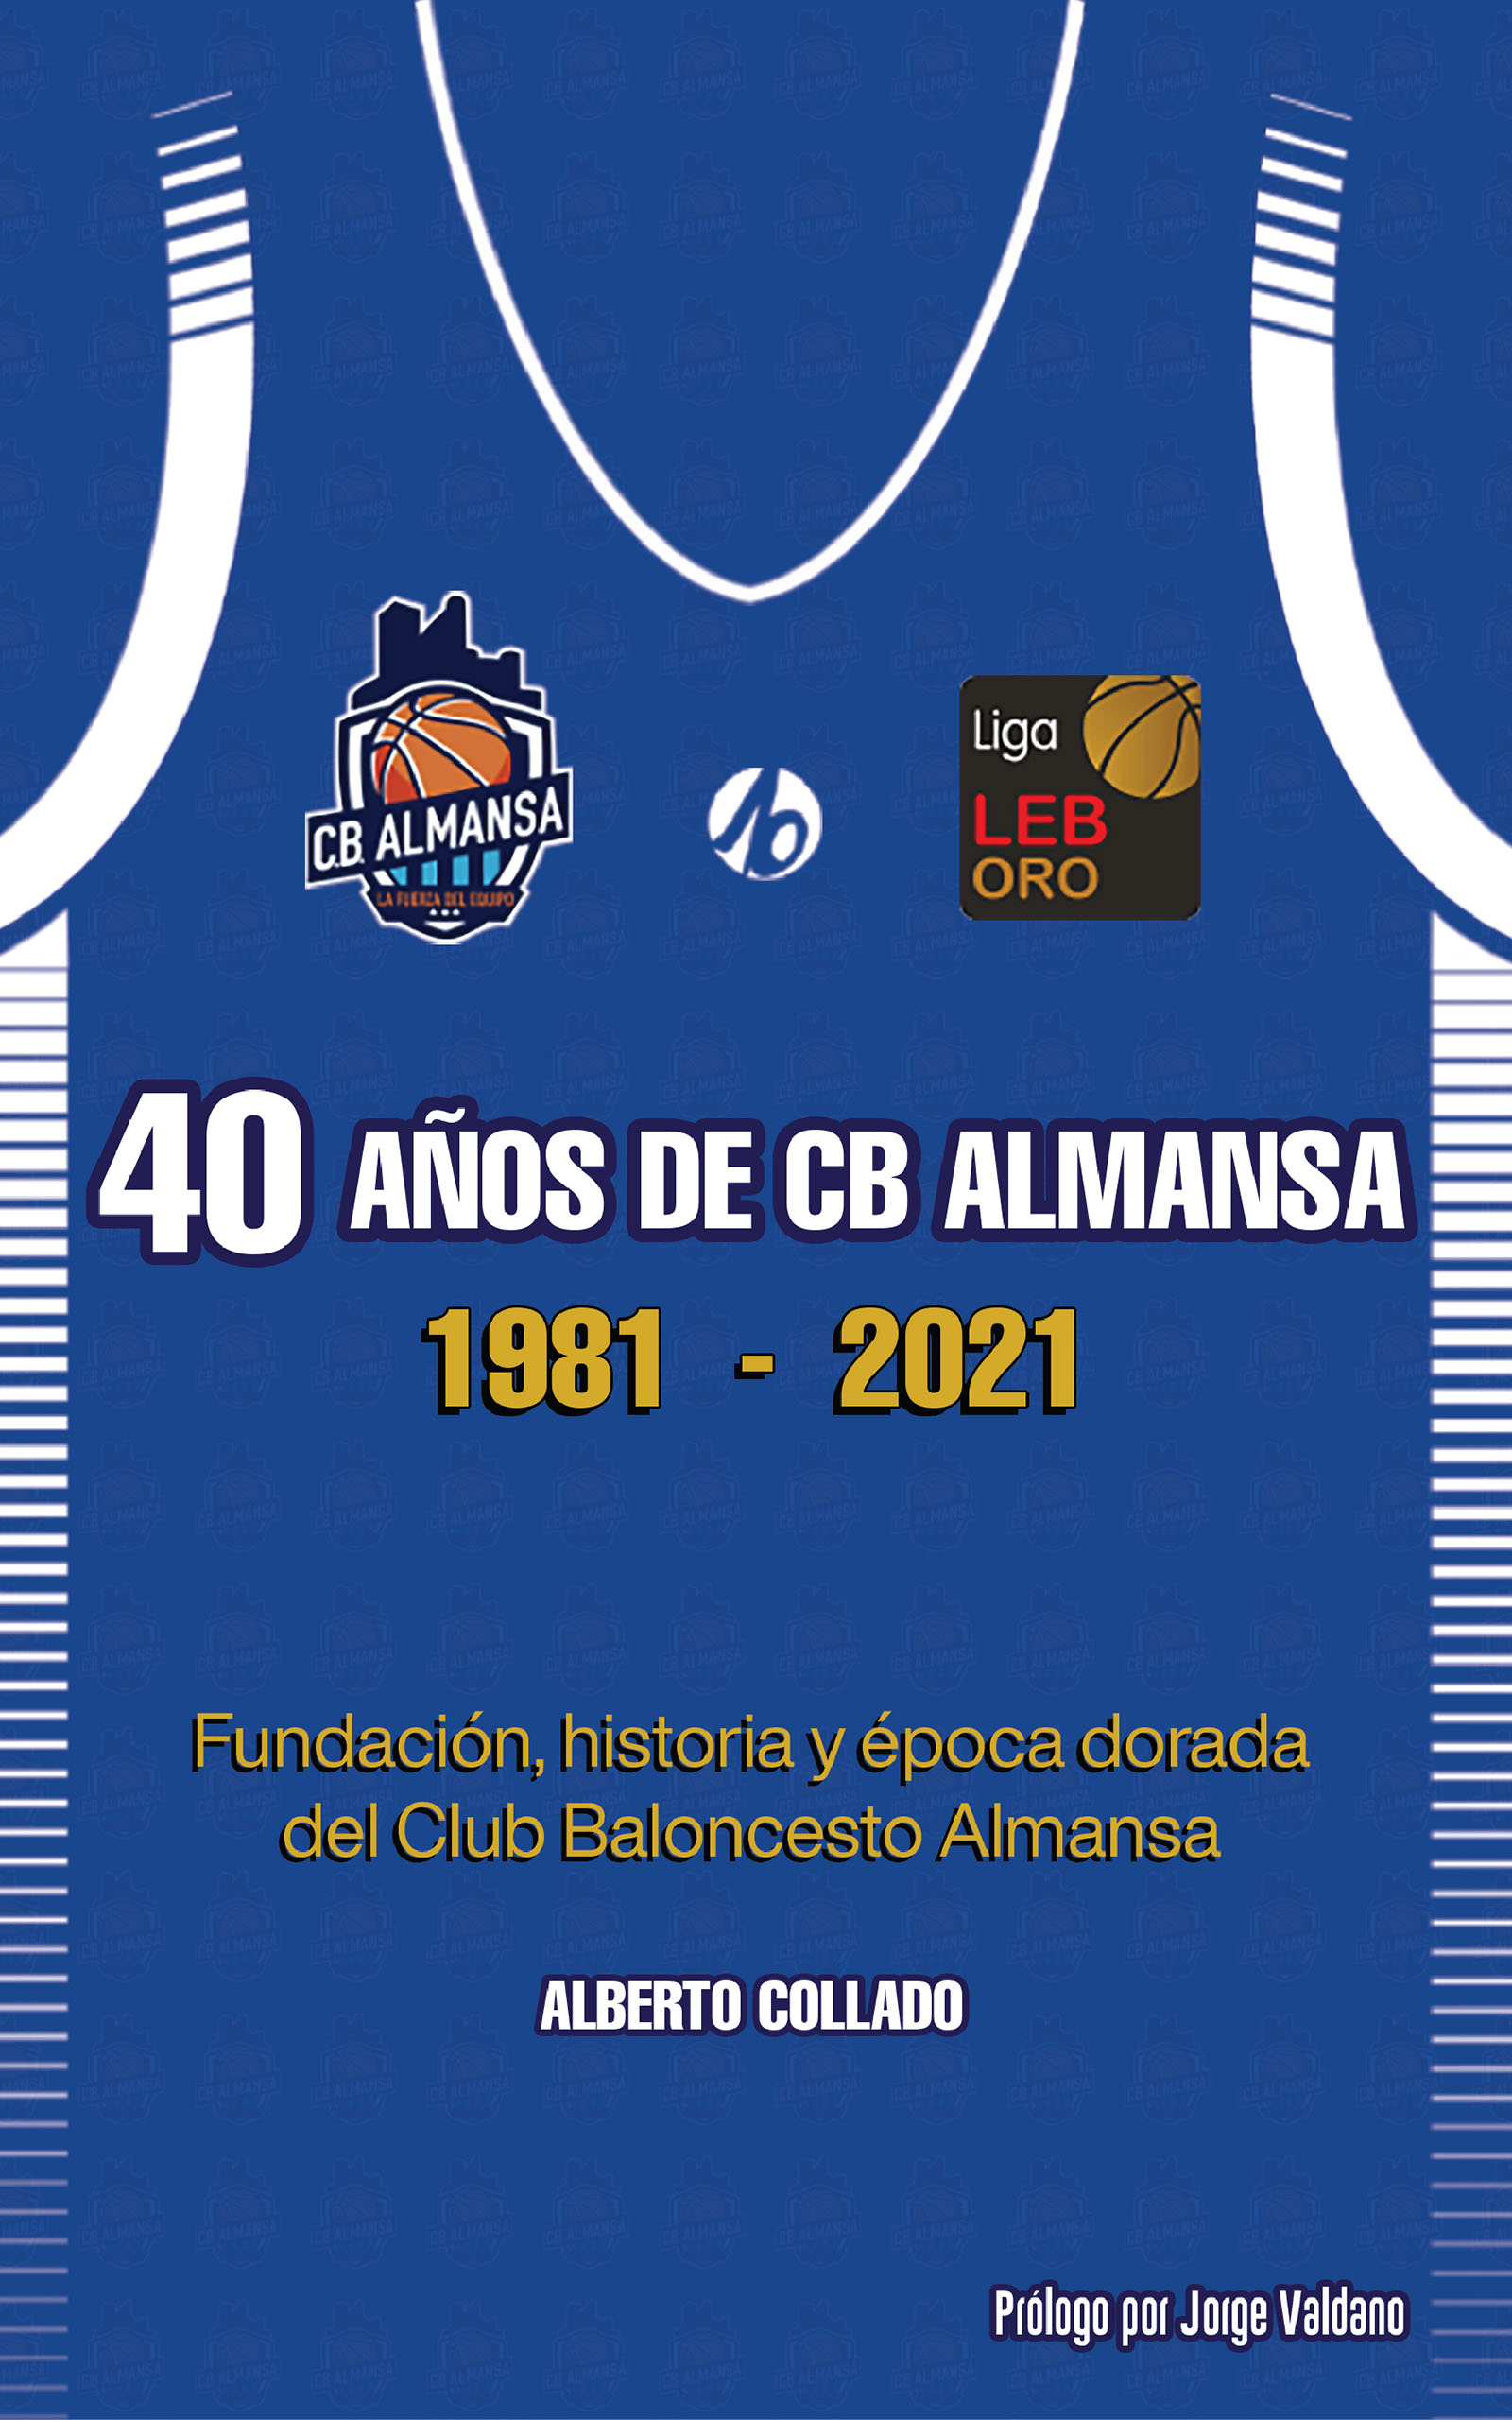 40 años de CB Almansa, de Alberto Collado